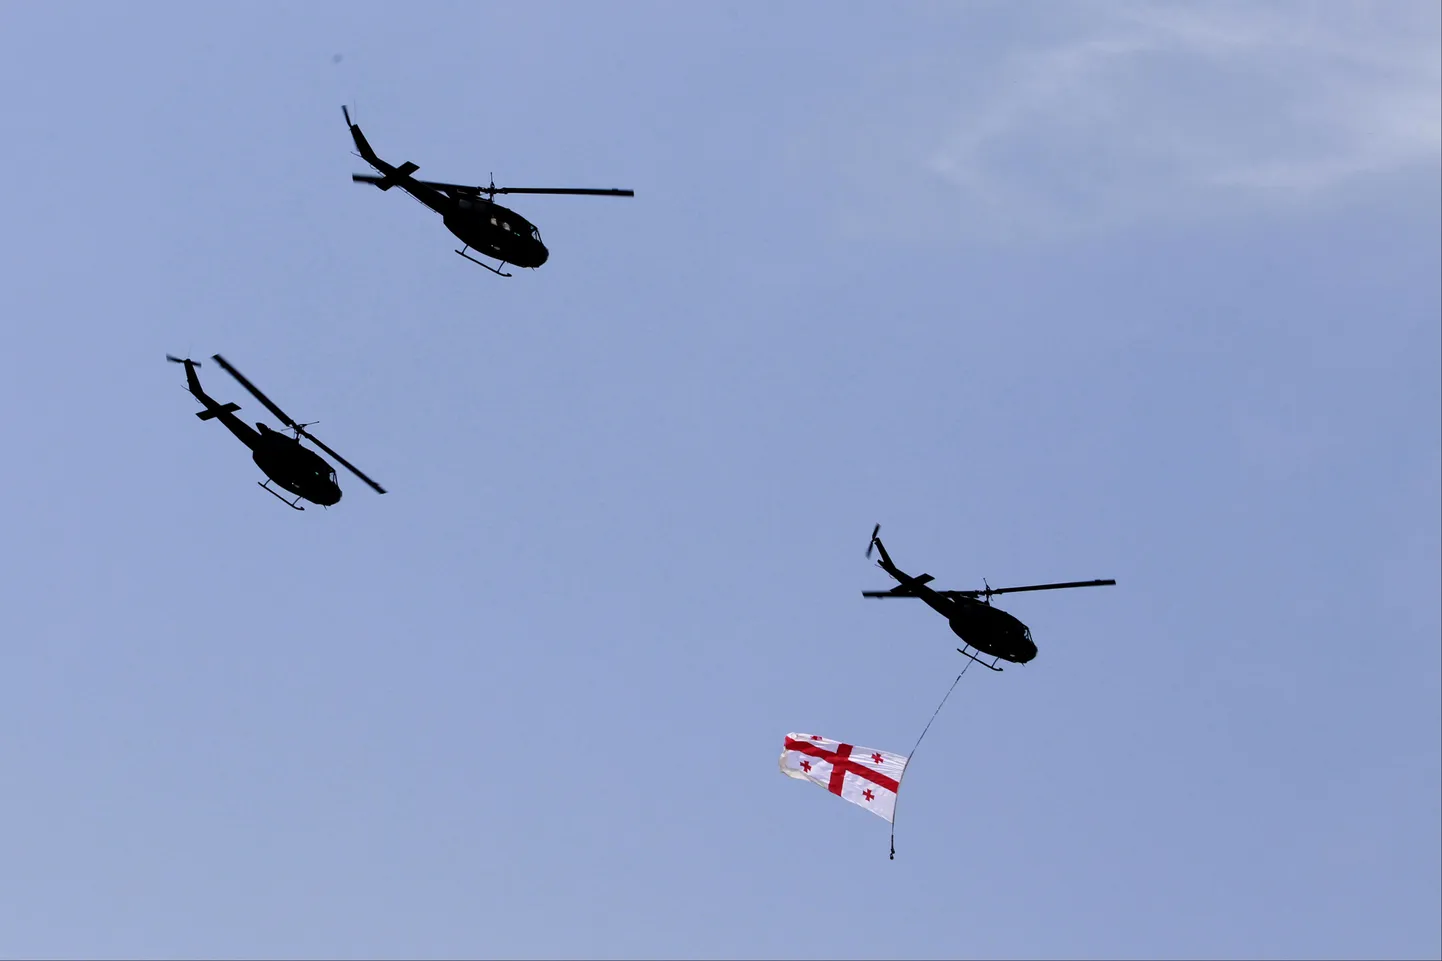 Gruusia armee helikopterid.